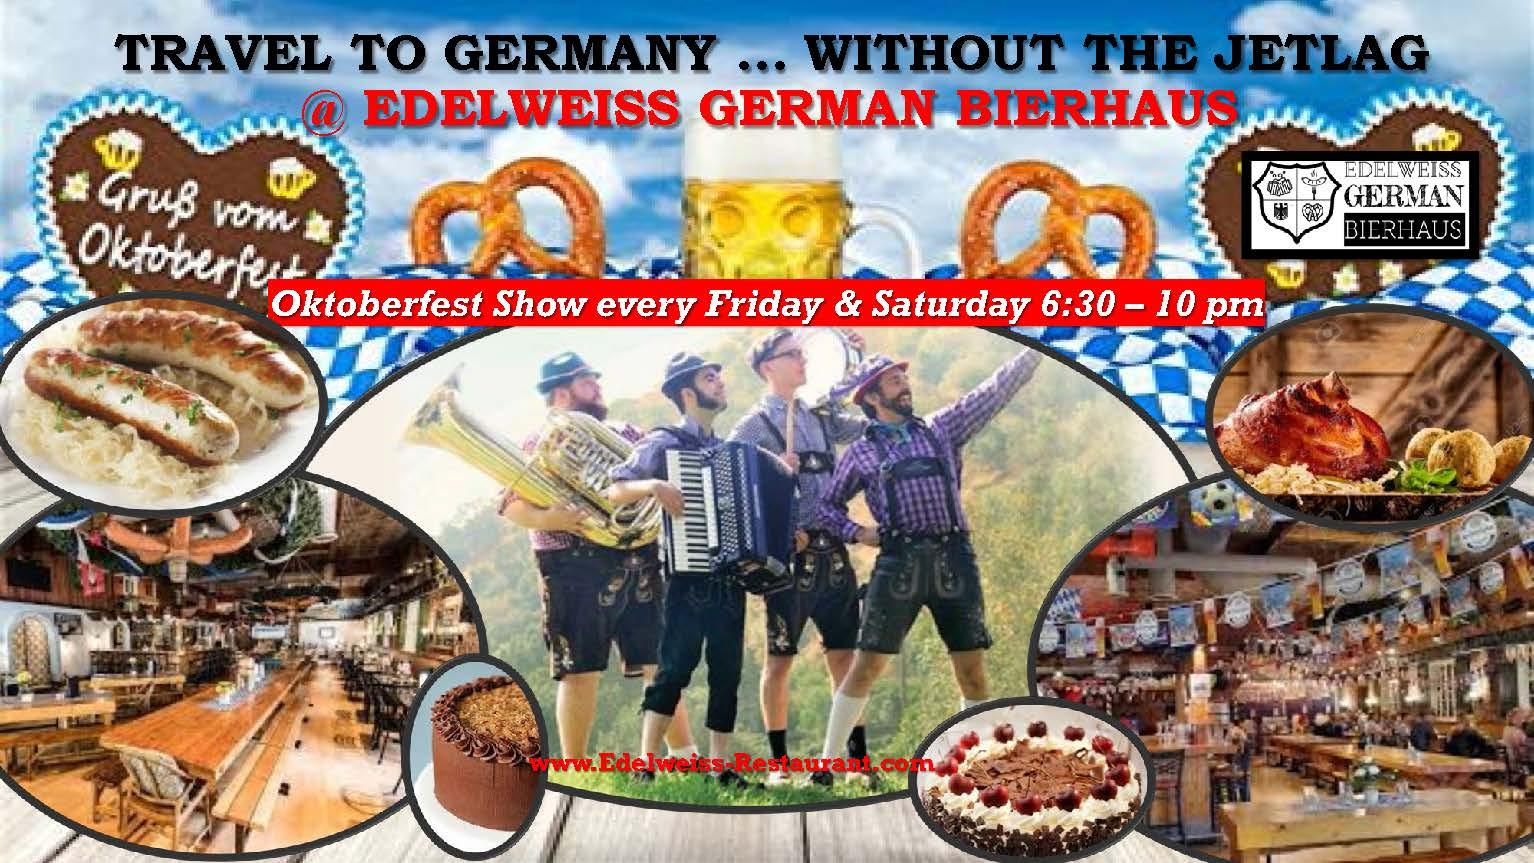 Oktoberfest Fun, German Food & Beer every Friday & Saturday